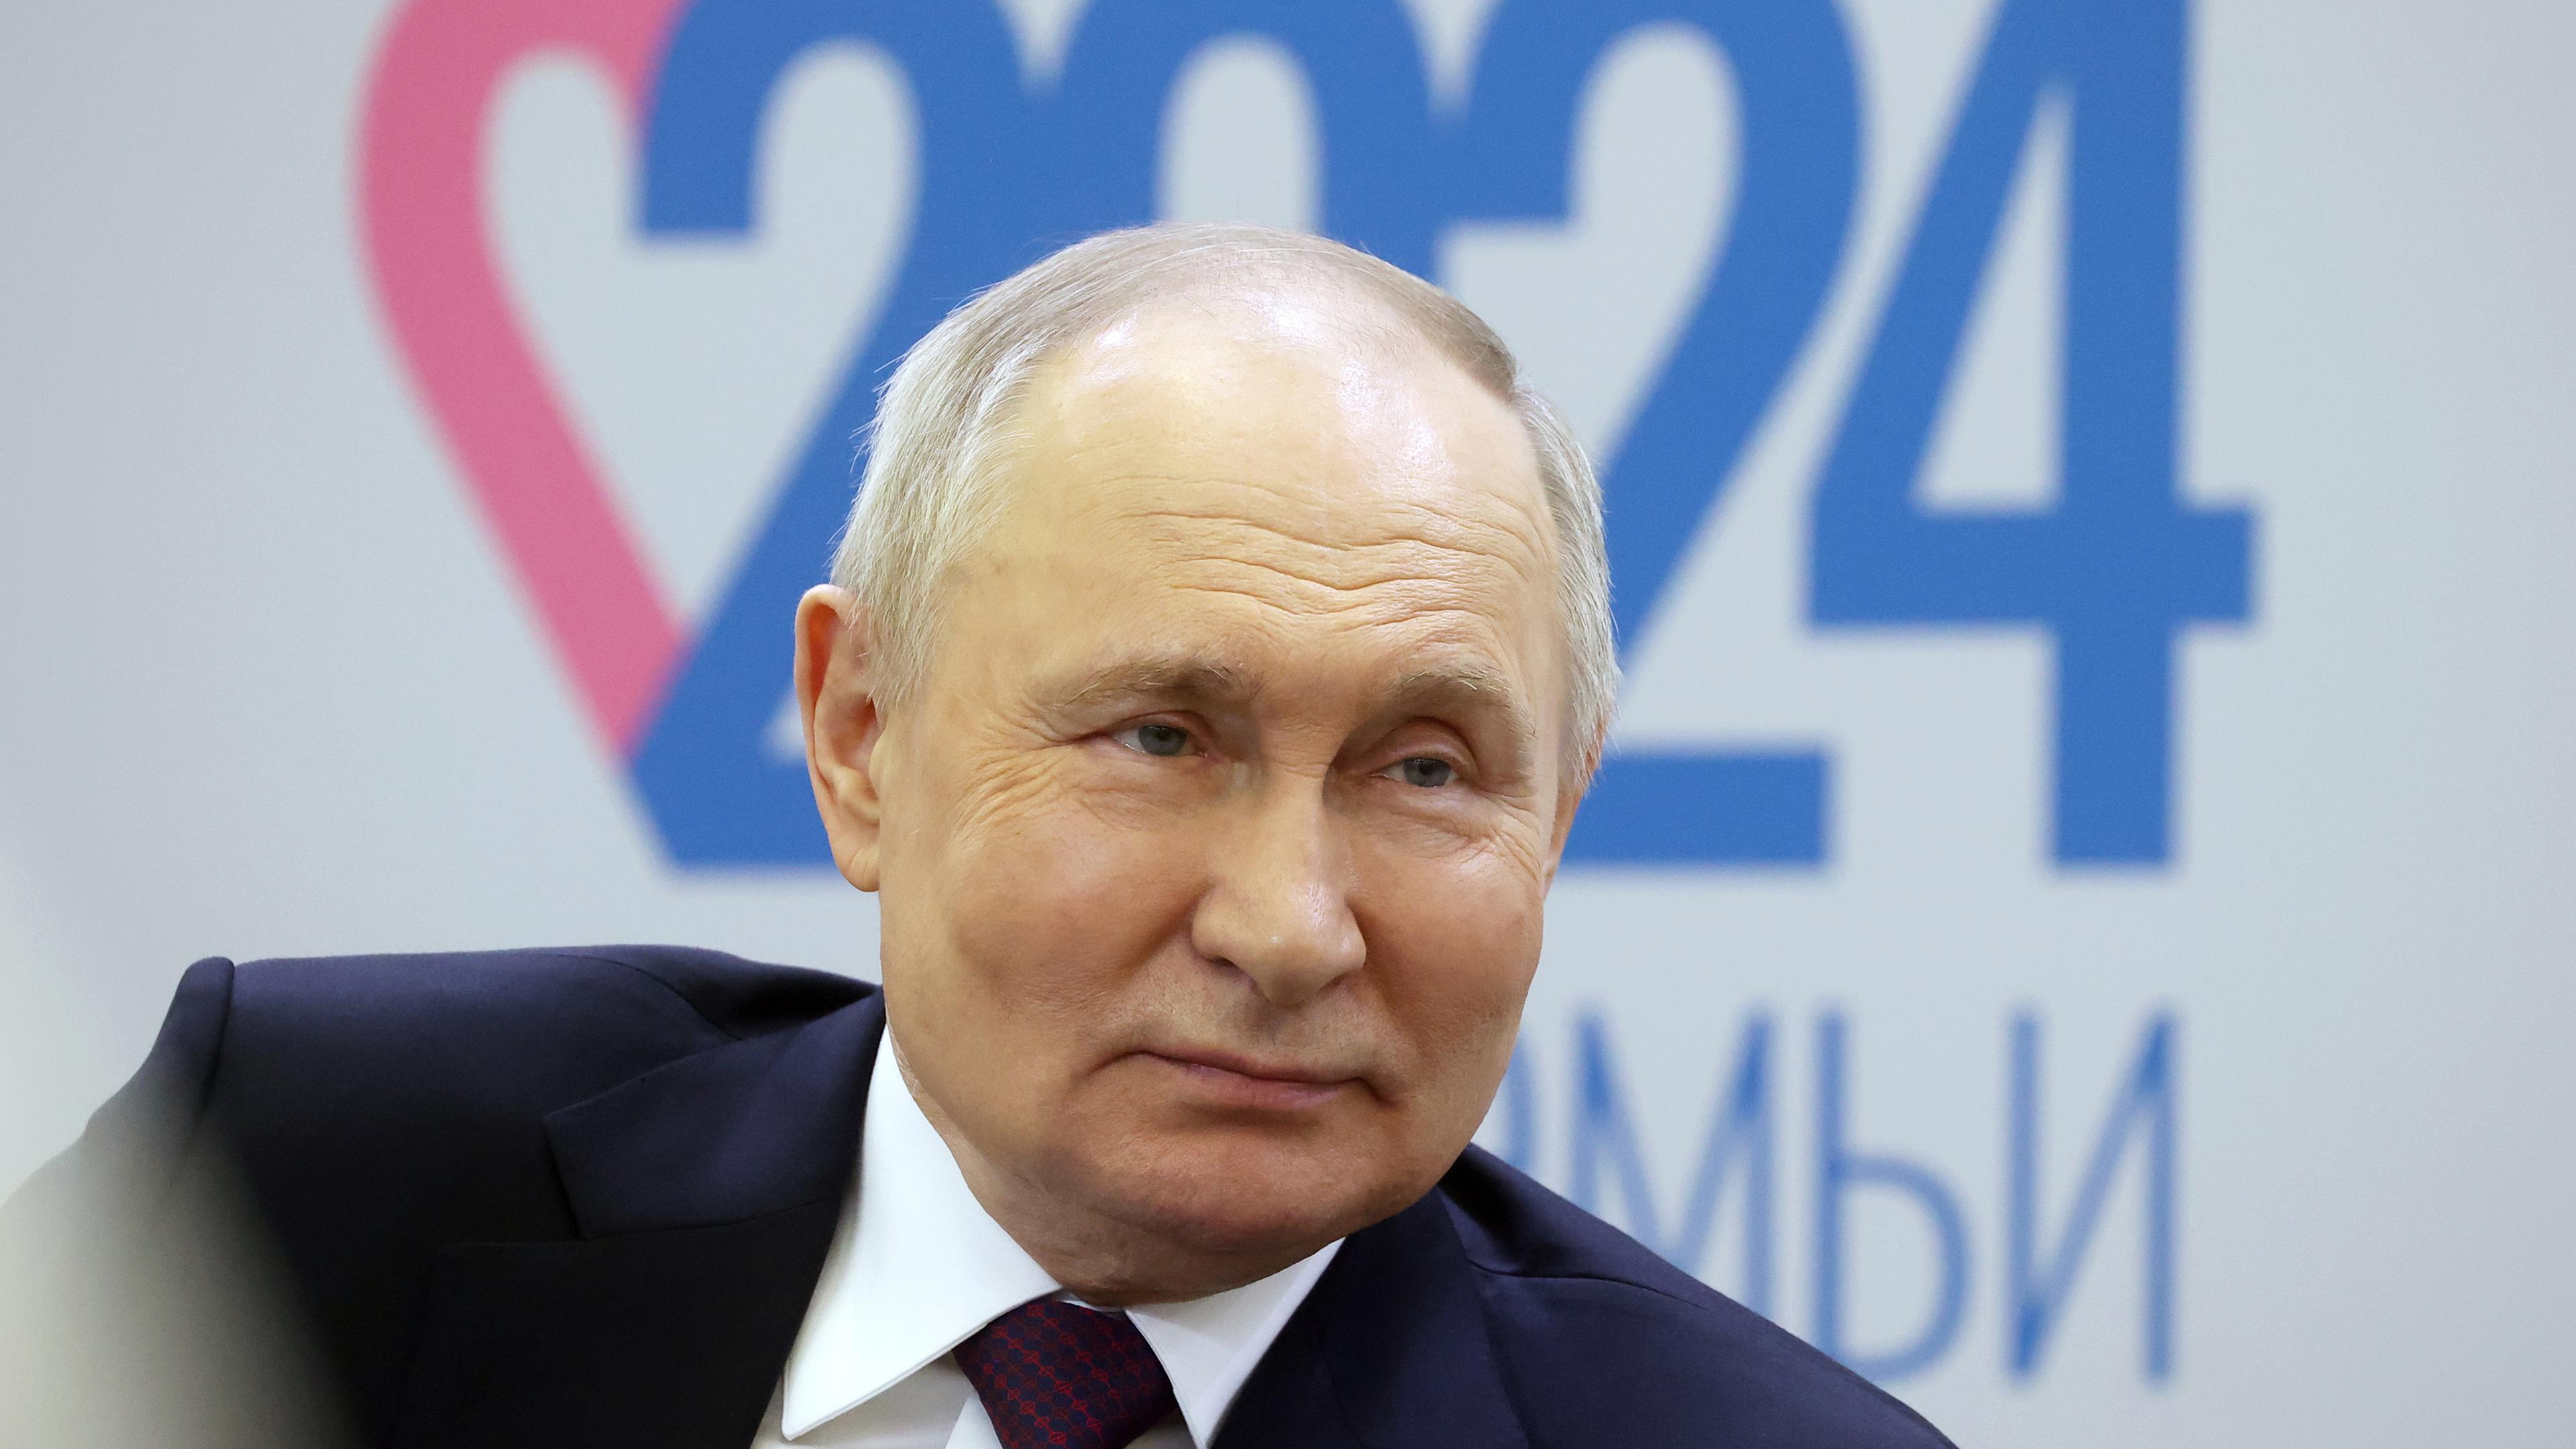 Russlands Präsident Putin beim Besuch des Familien Forums in Moskau